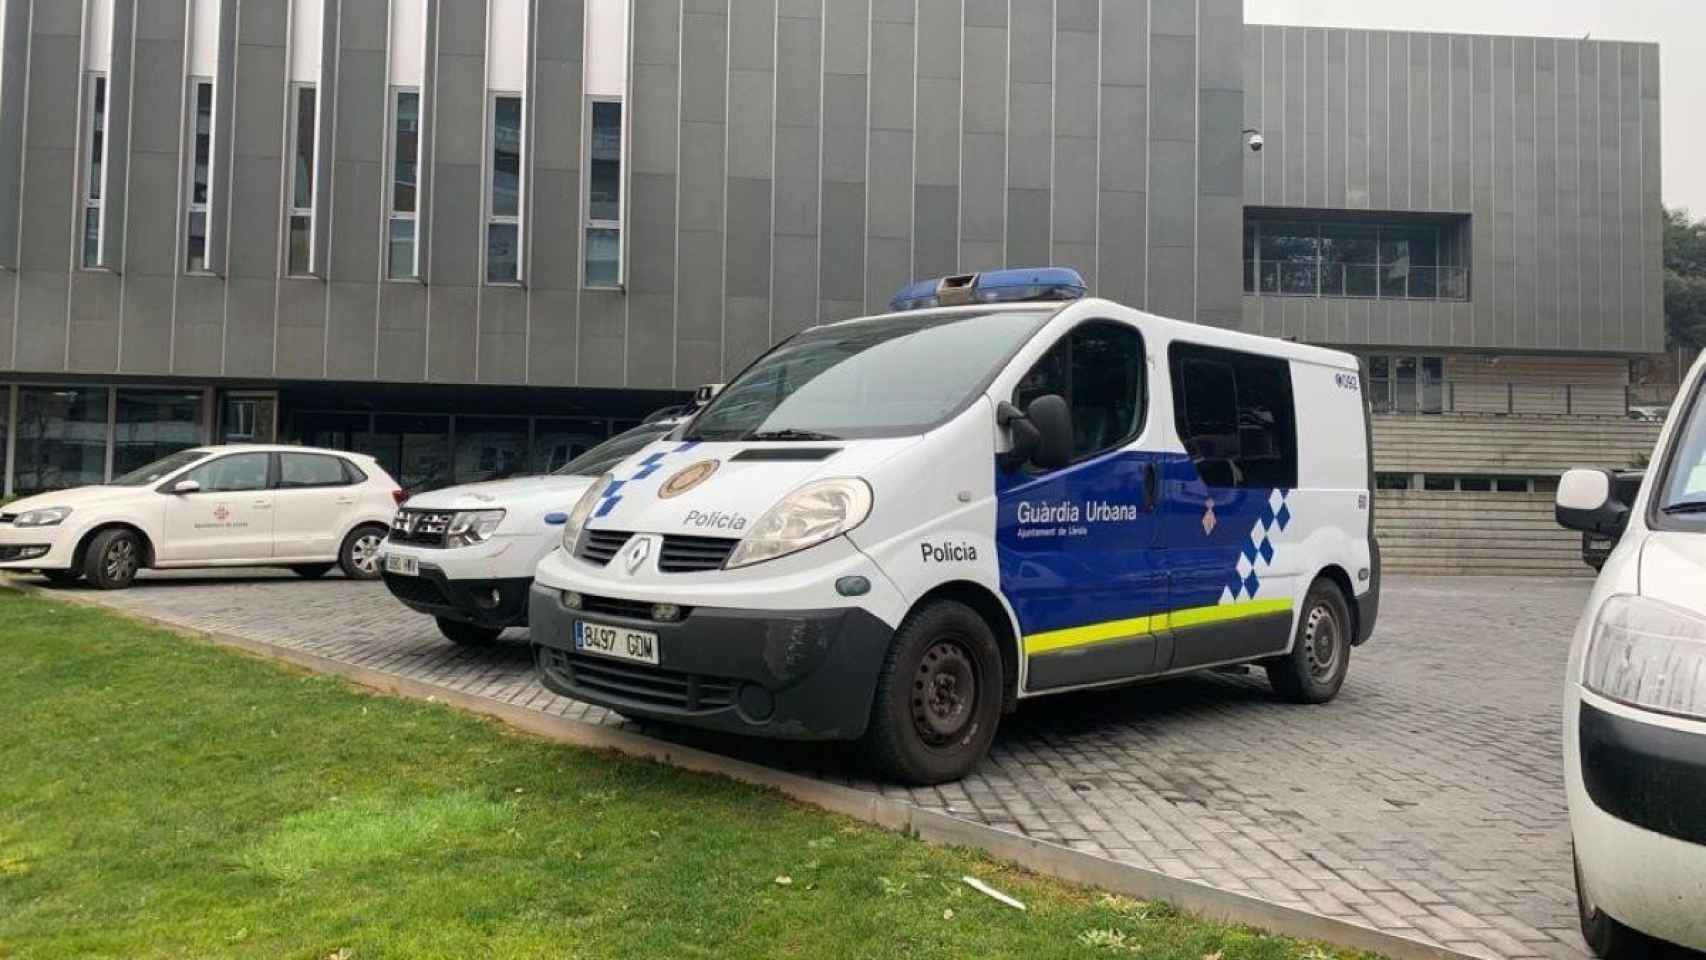 Comisaría de la policía local de Lleida, donde un joven ha sido detenido por herir presuntamente a otro con un cristal / EP